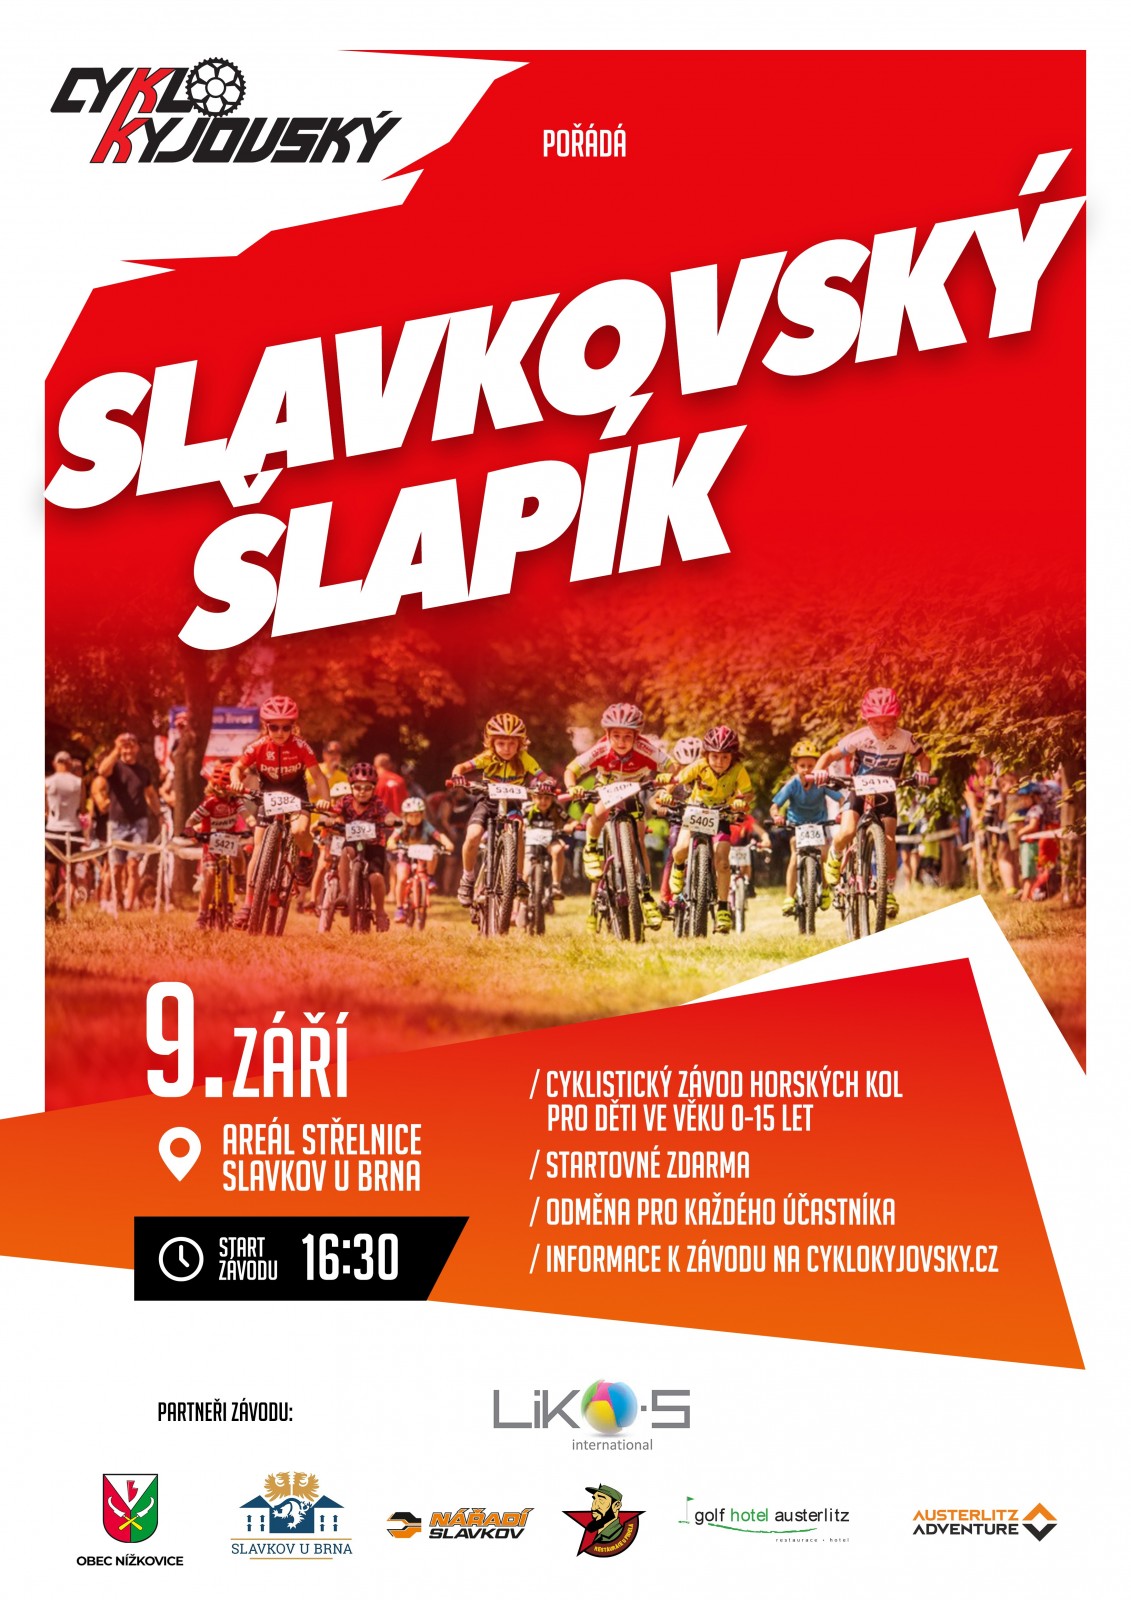 SLAVKOVSKÝ ŠLAPÍK - Cyklistický závod horských kol pro děti ve věku 0-15 let